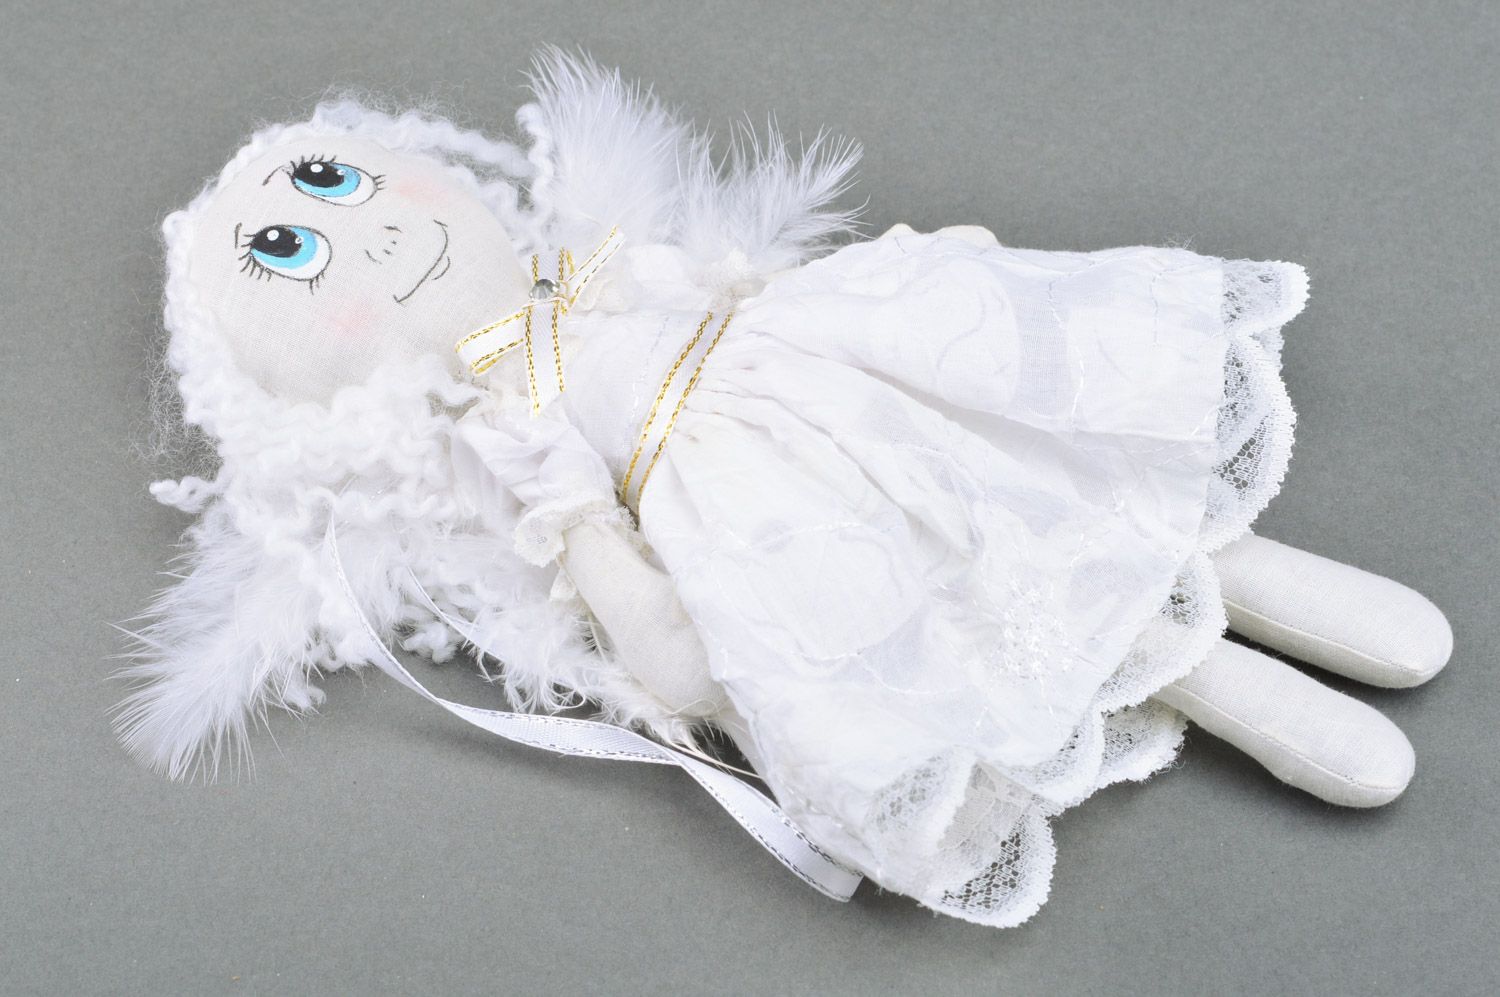 Игрушка кукла из ткани девочка с крыльями из перьев белая средняя ручной работы фото 2